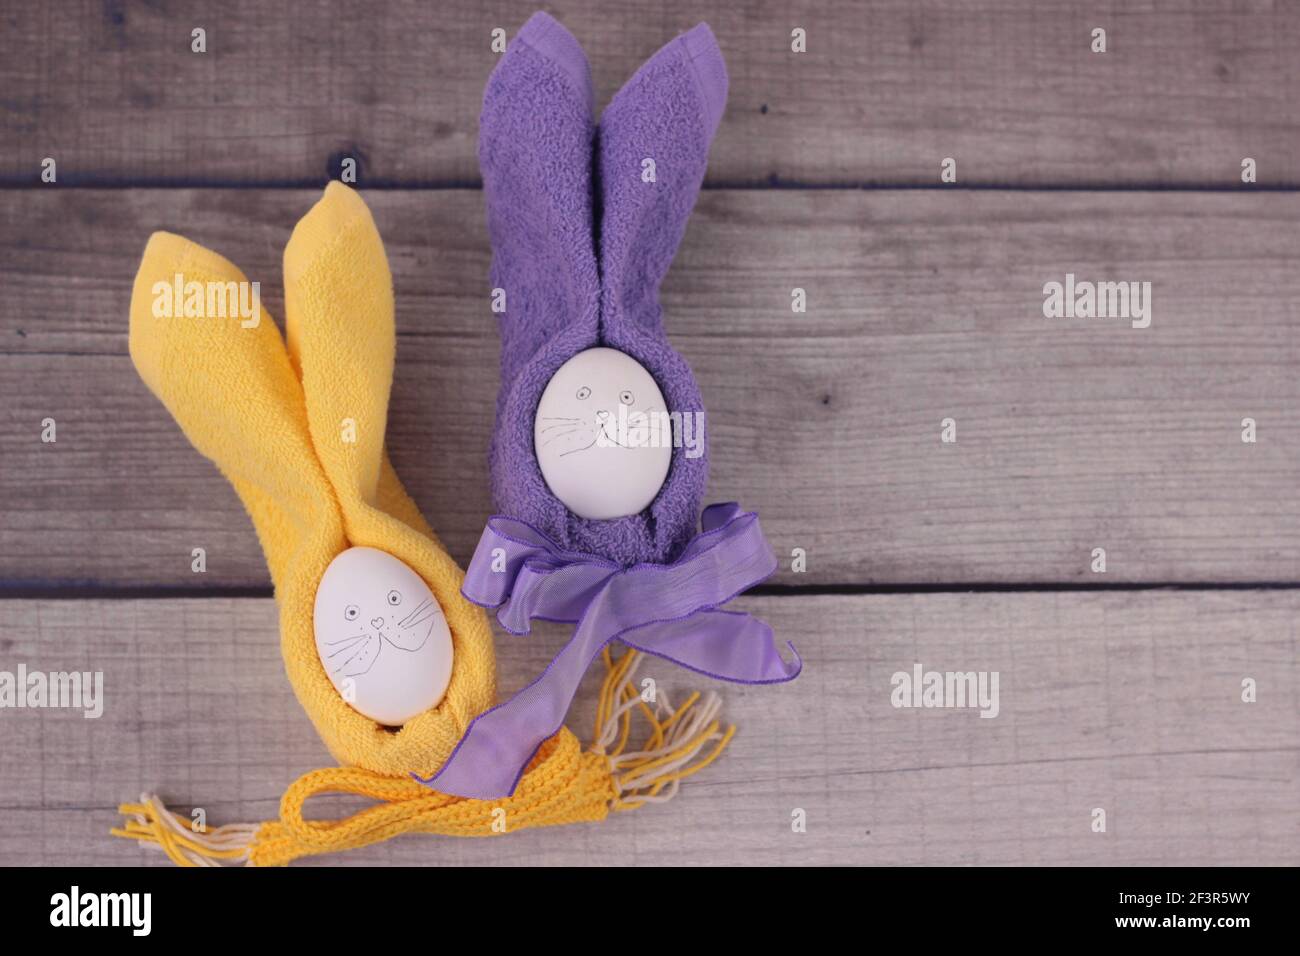 Frohe ostern Konzept.Ostern Feiertags Tisch Einstellung mit Eiern auf Scheune Boards. Rubbits aus Eiern, gelbe und violette Servietten mit Schleifen auf Holzhintergrun Stockfoto